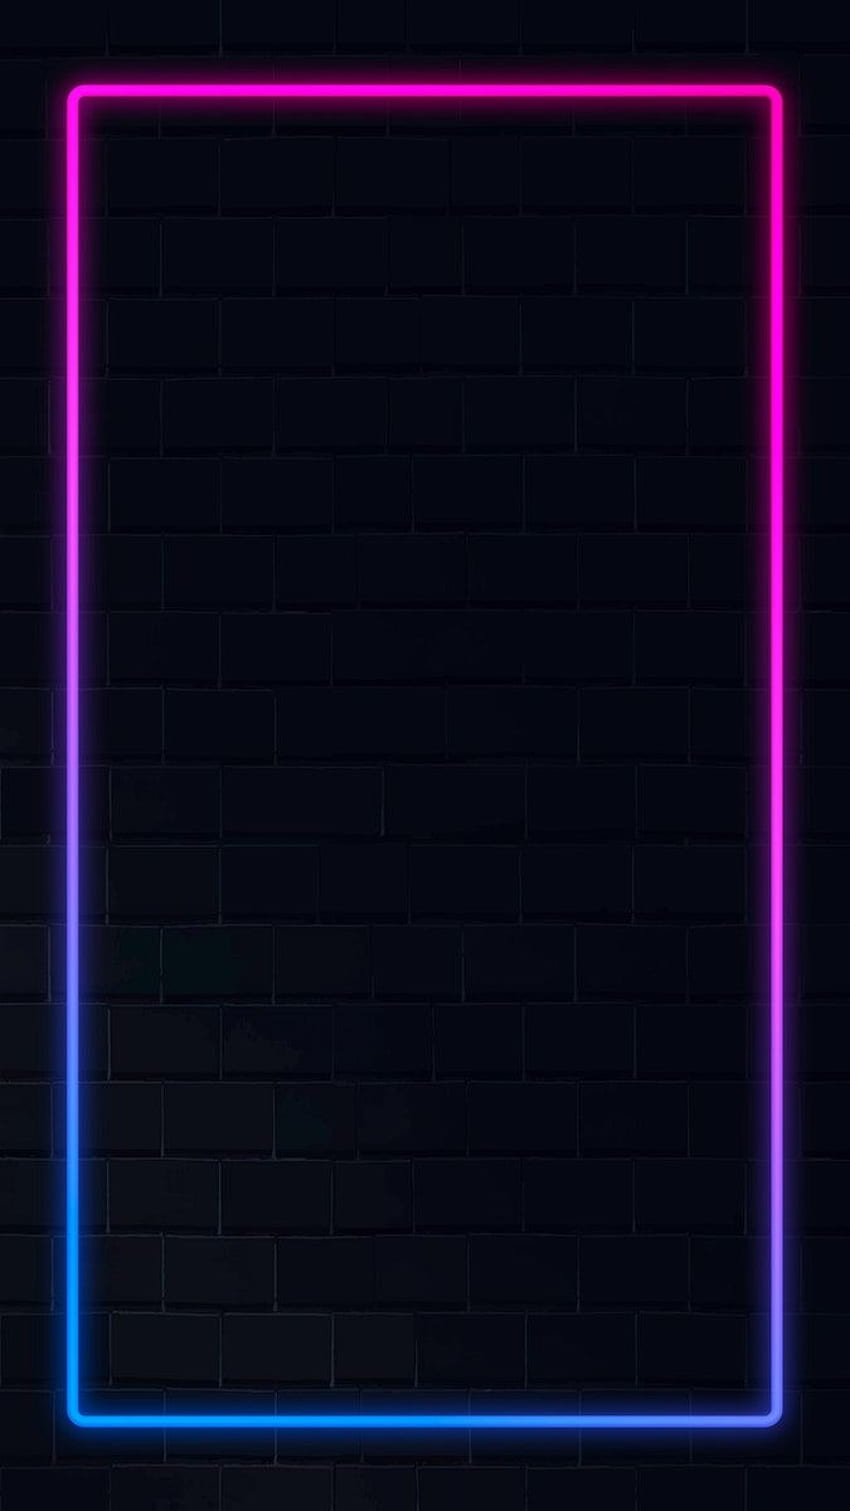 Marco de neón rosa y azul marco de neón en un vector de oscuro. / Aum. Luz de neón, Neón, neón del iphone, Neón púrpura azul fondo de pantalla del teléfono